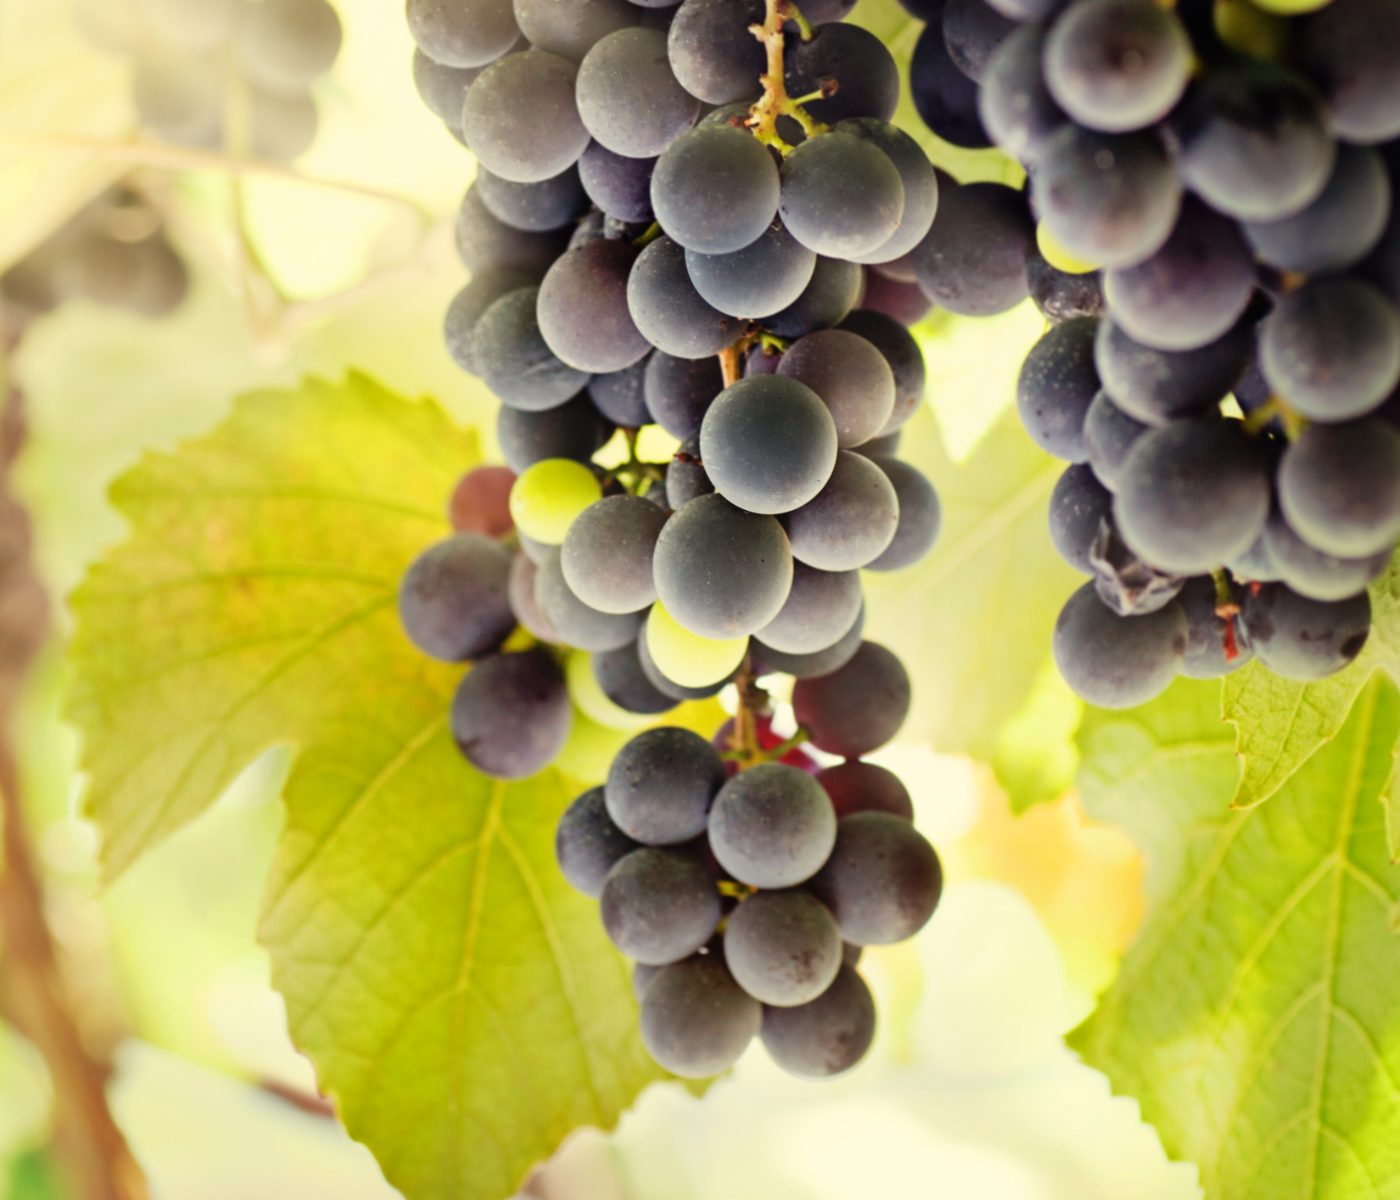 Investigación propone aprovechar los subproductos de la uva en acuicultura